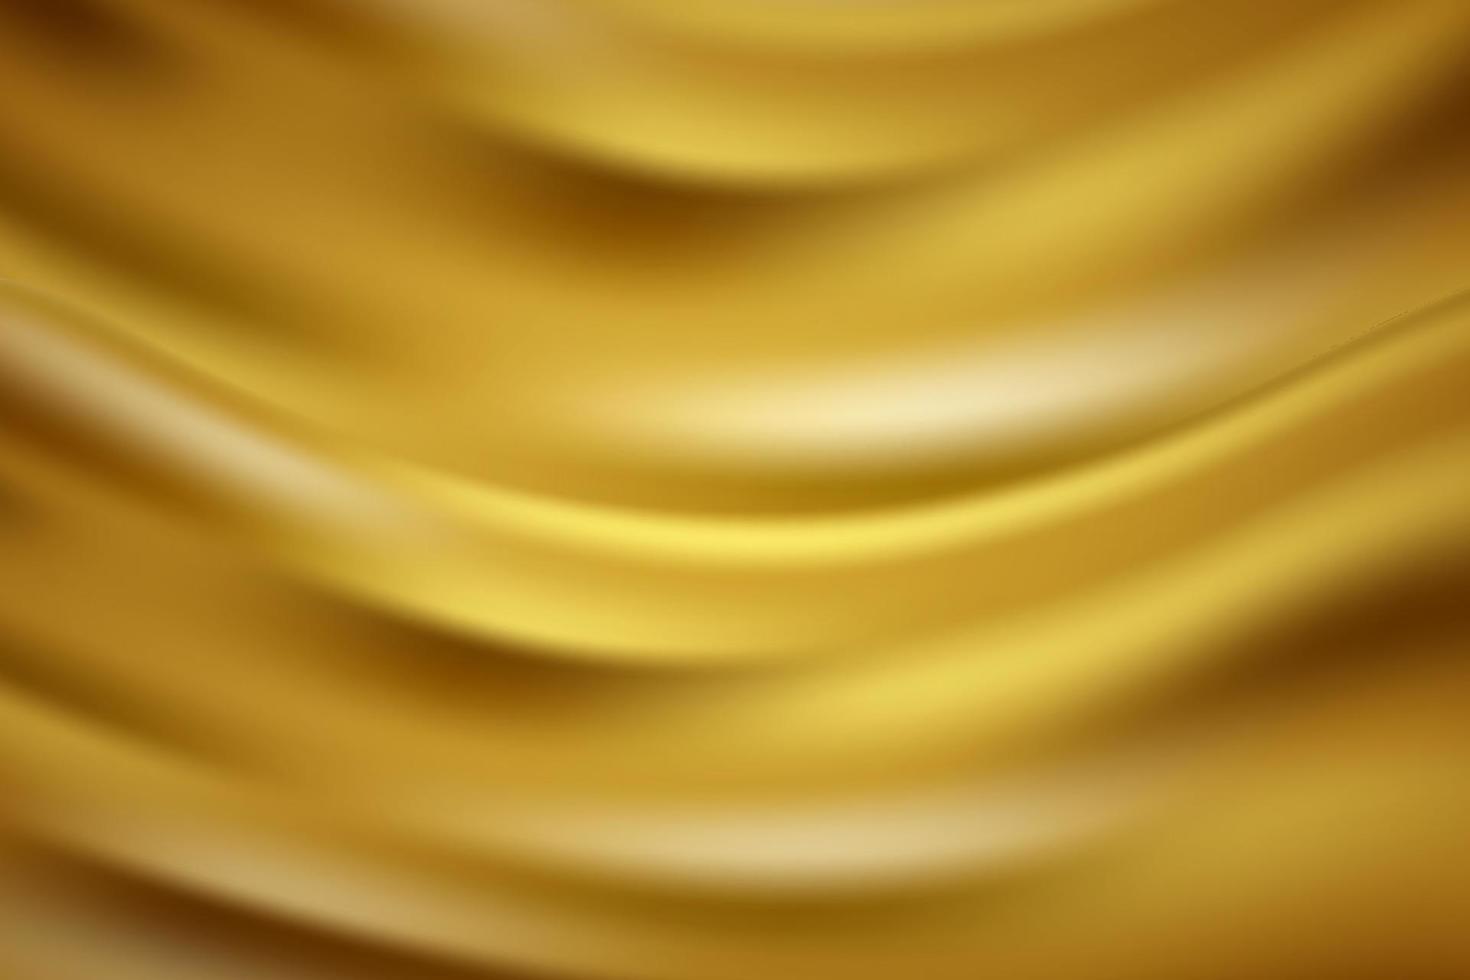 abstract goud zijde kleding golven geel draperie textiel kleding stof achtergrond vector illustratie. sjabloon, banier, poster, kaart, enz